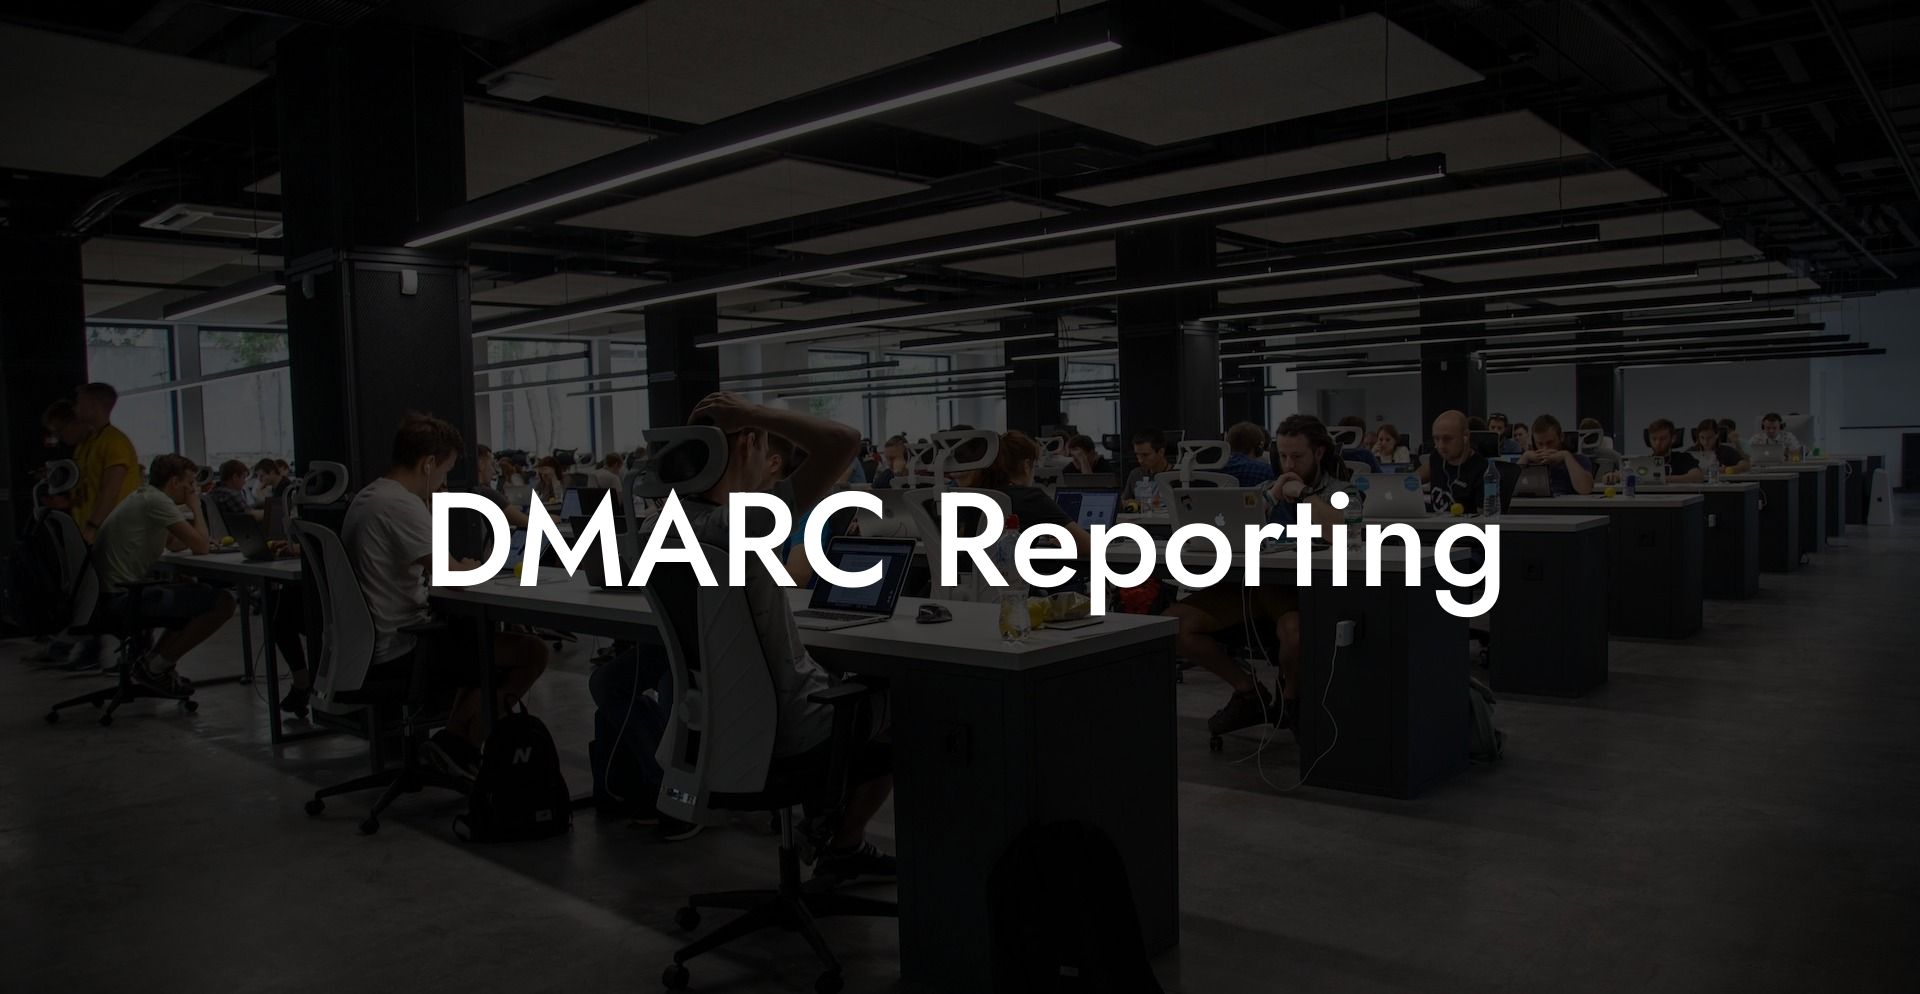 DMARC Reporting